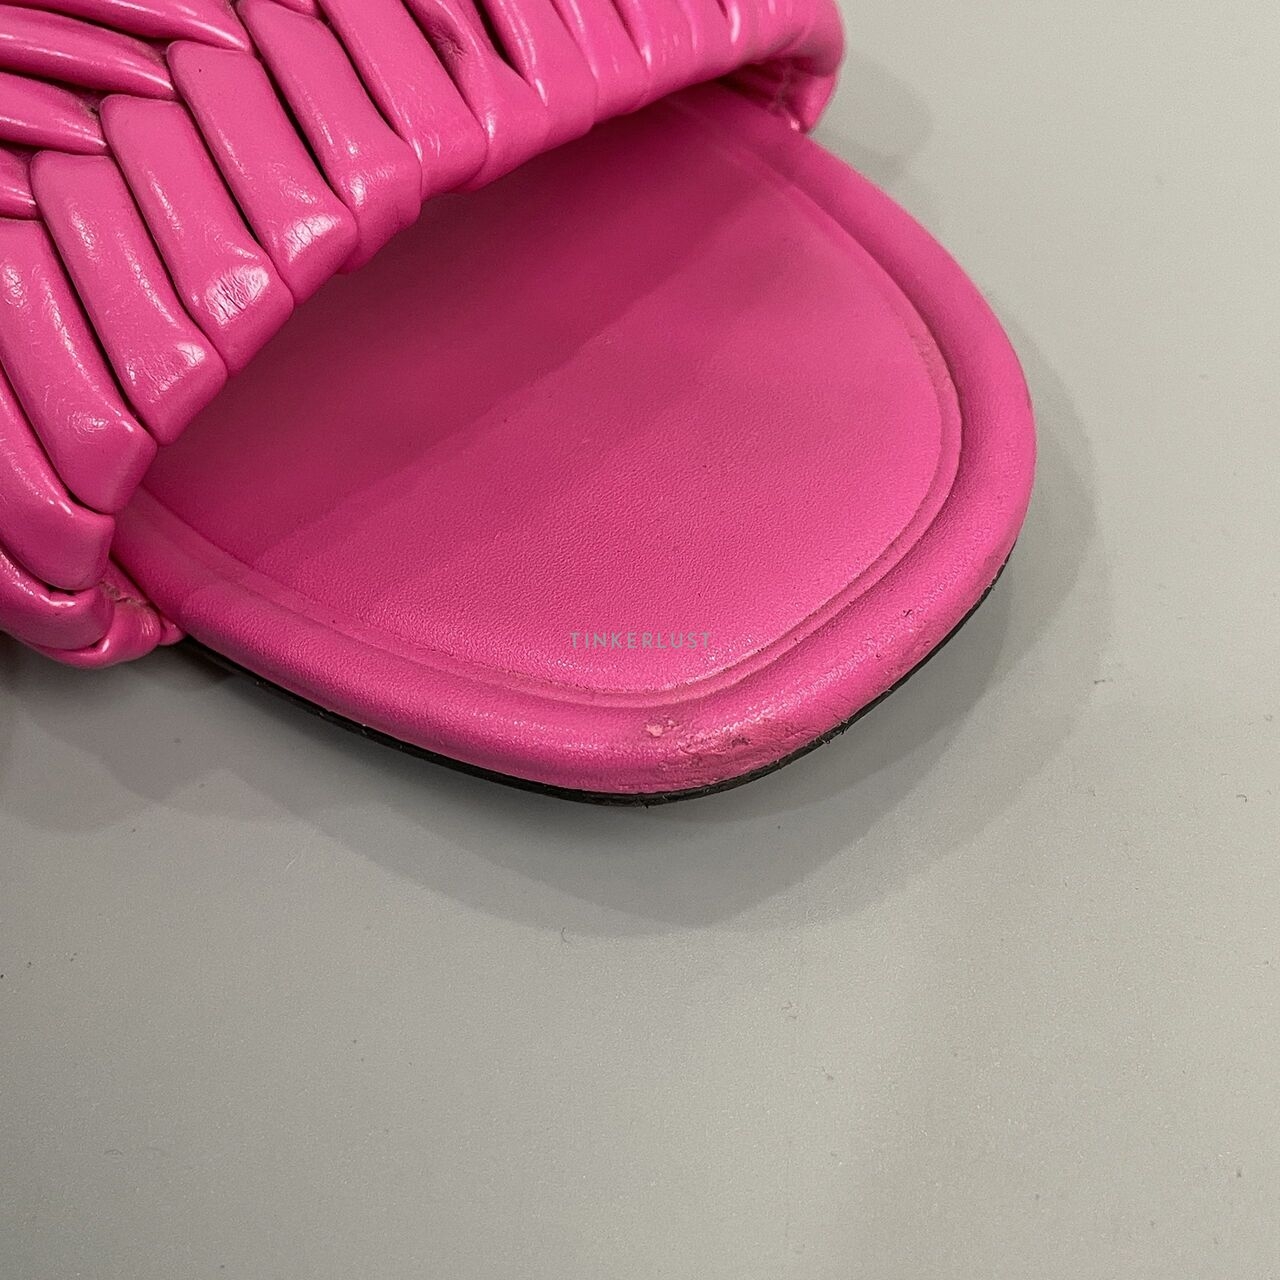 Zara Pink Sandals